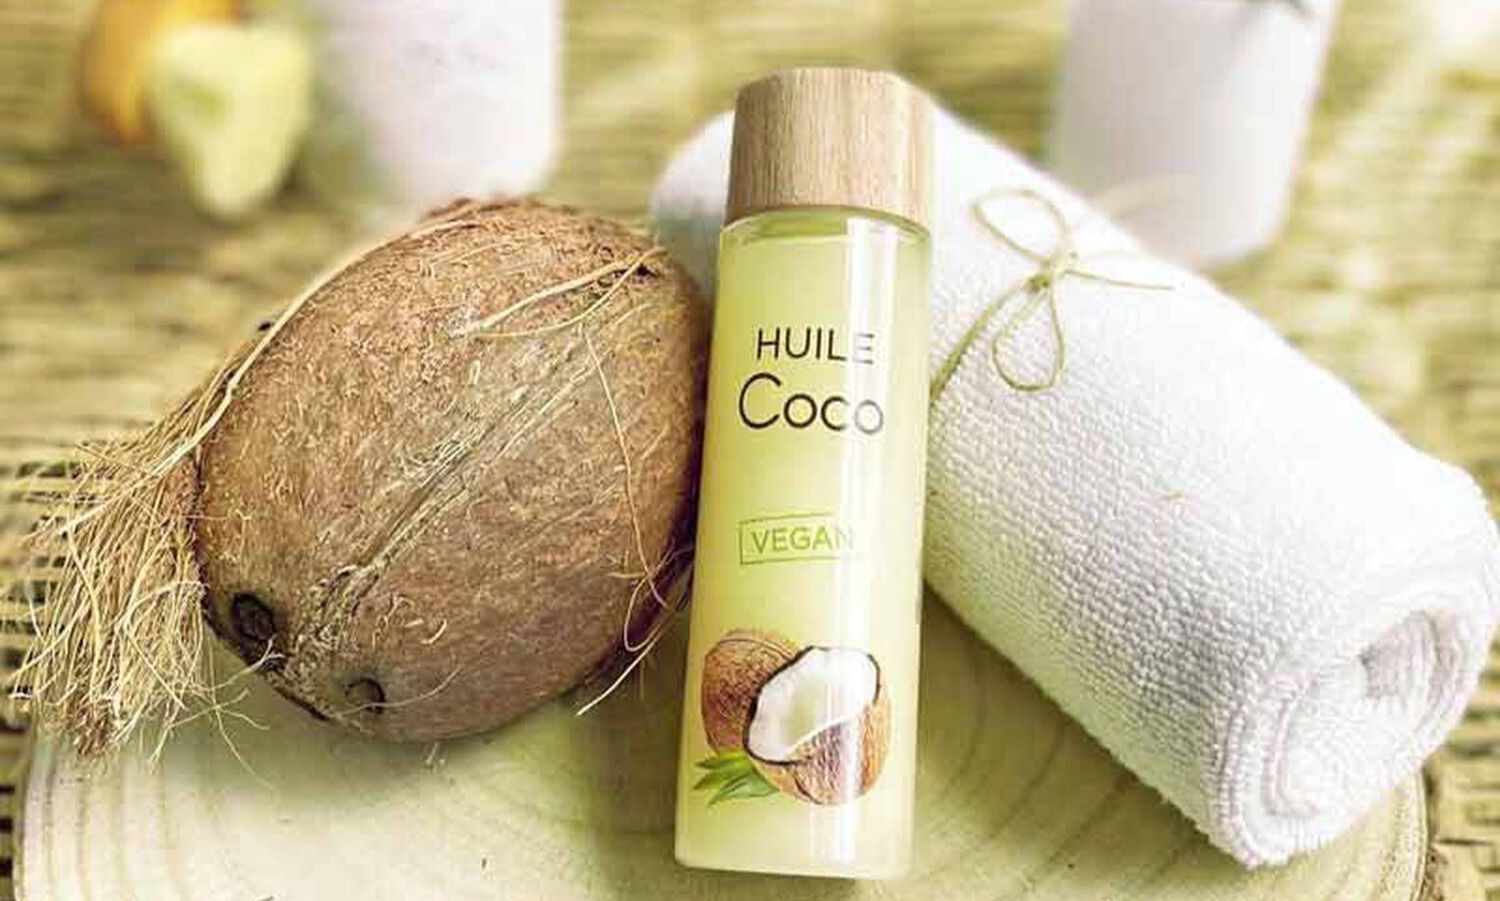 Les bienfaits de l'huile de Coco pour la peau